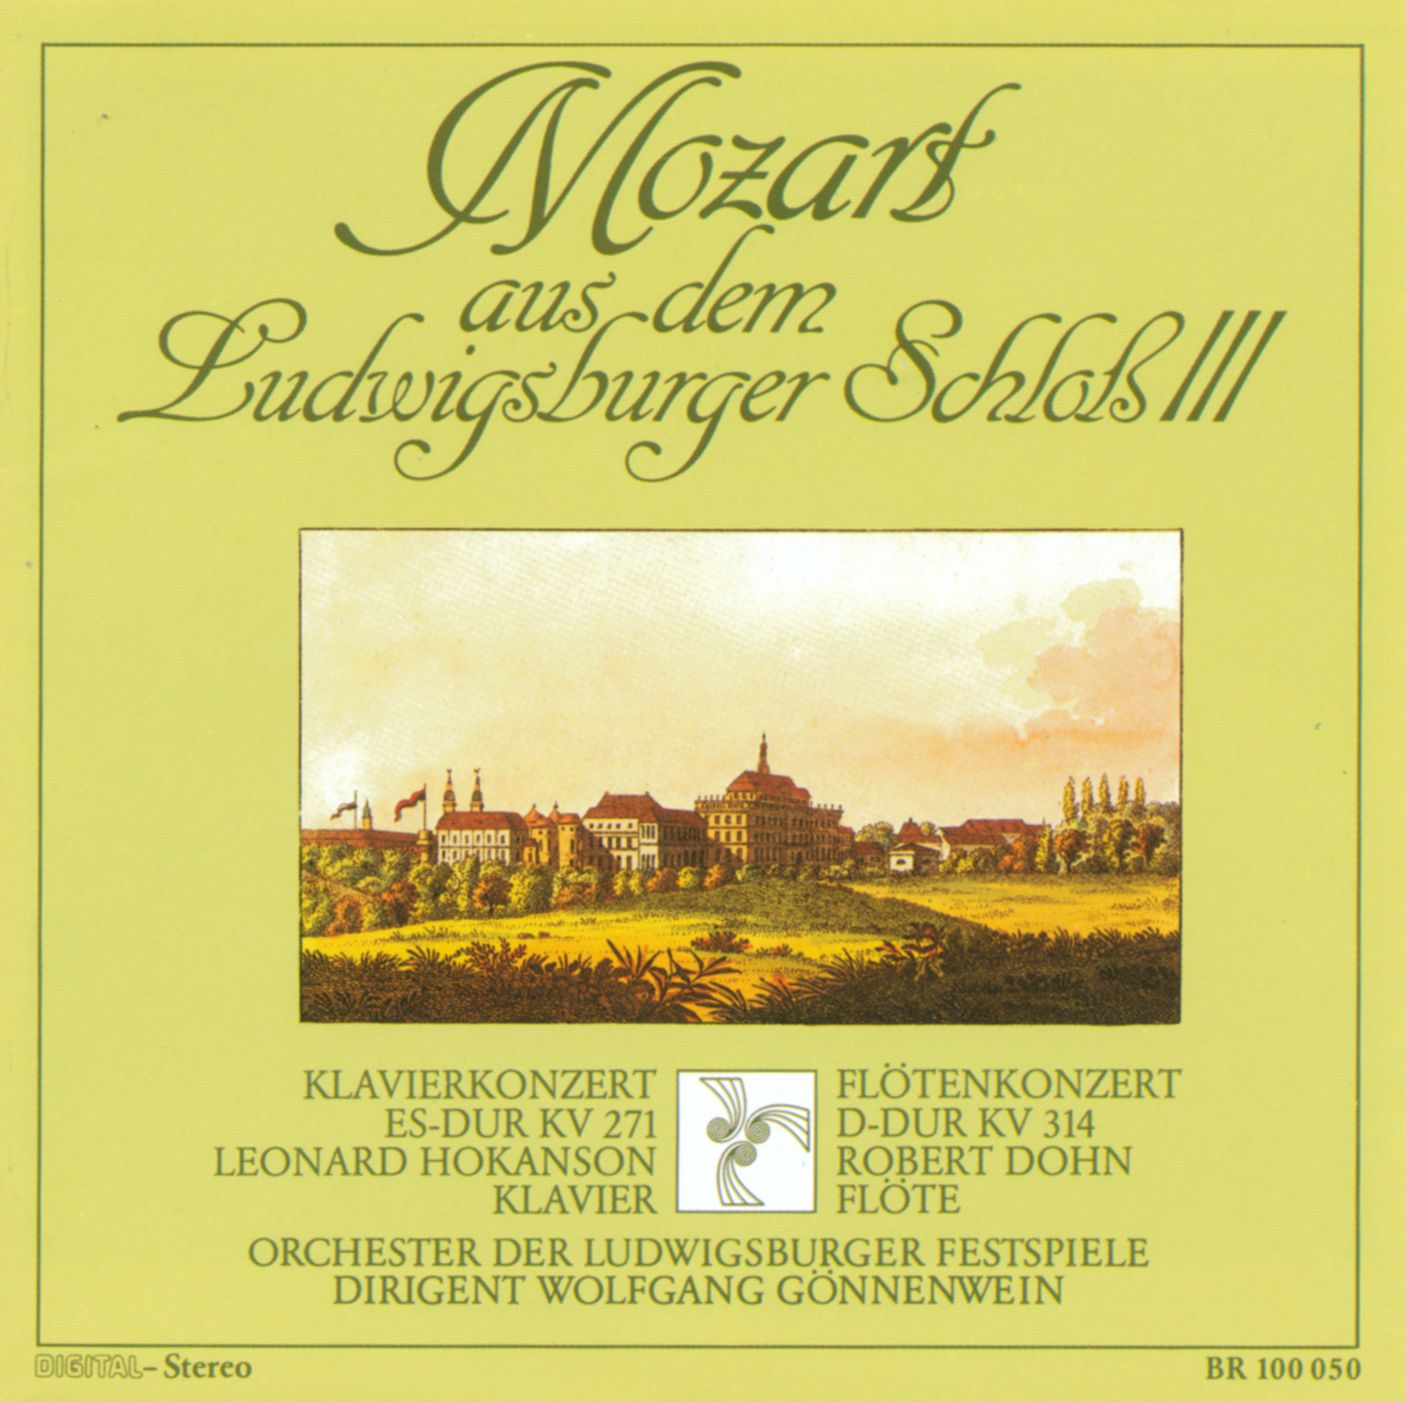 Mozart aus dem Ludwigsburger Schloß III